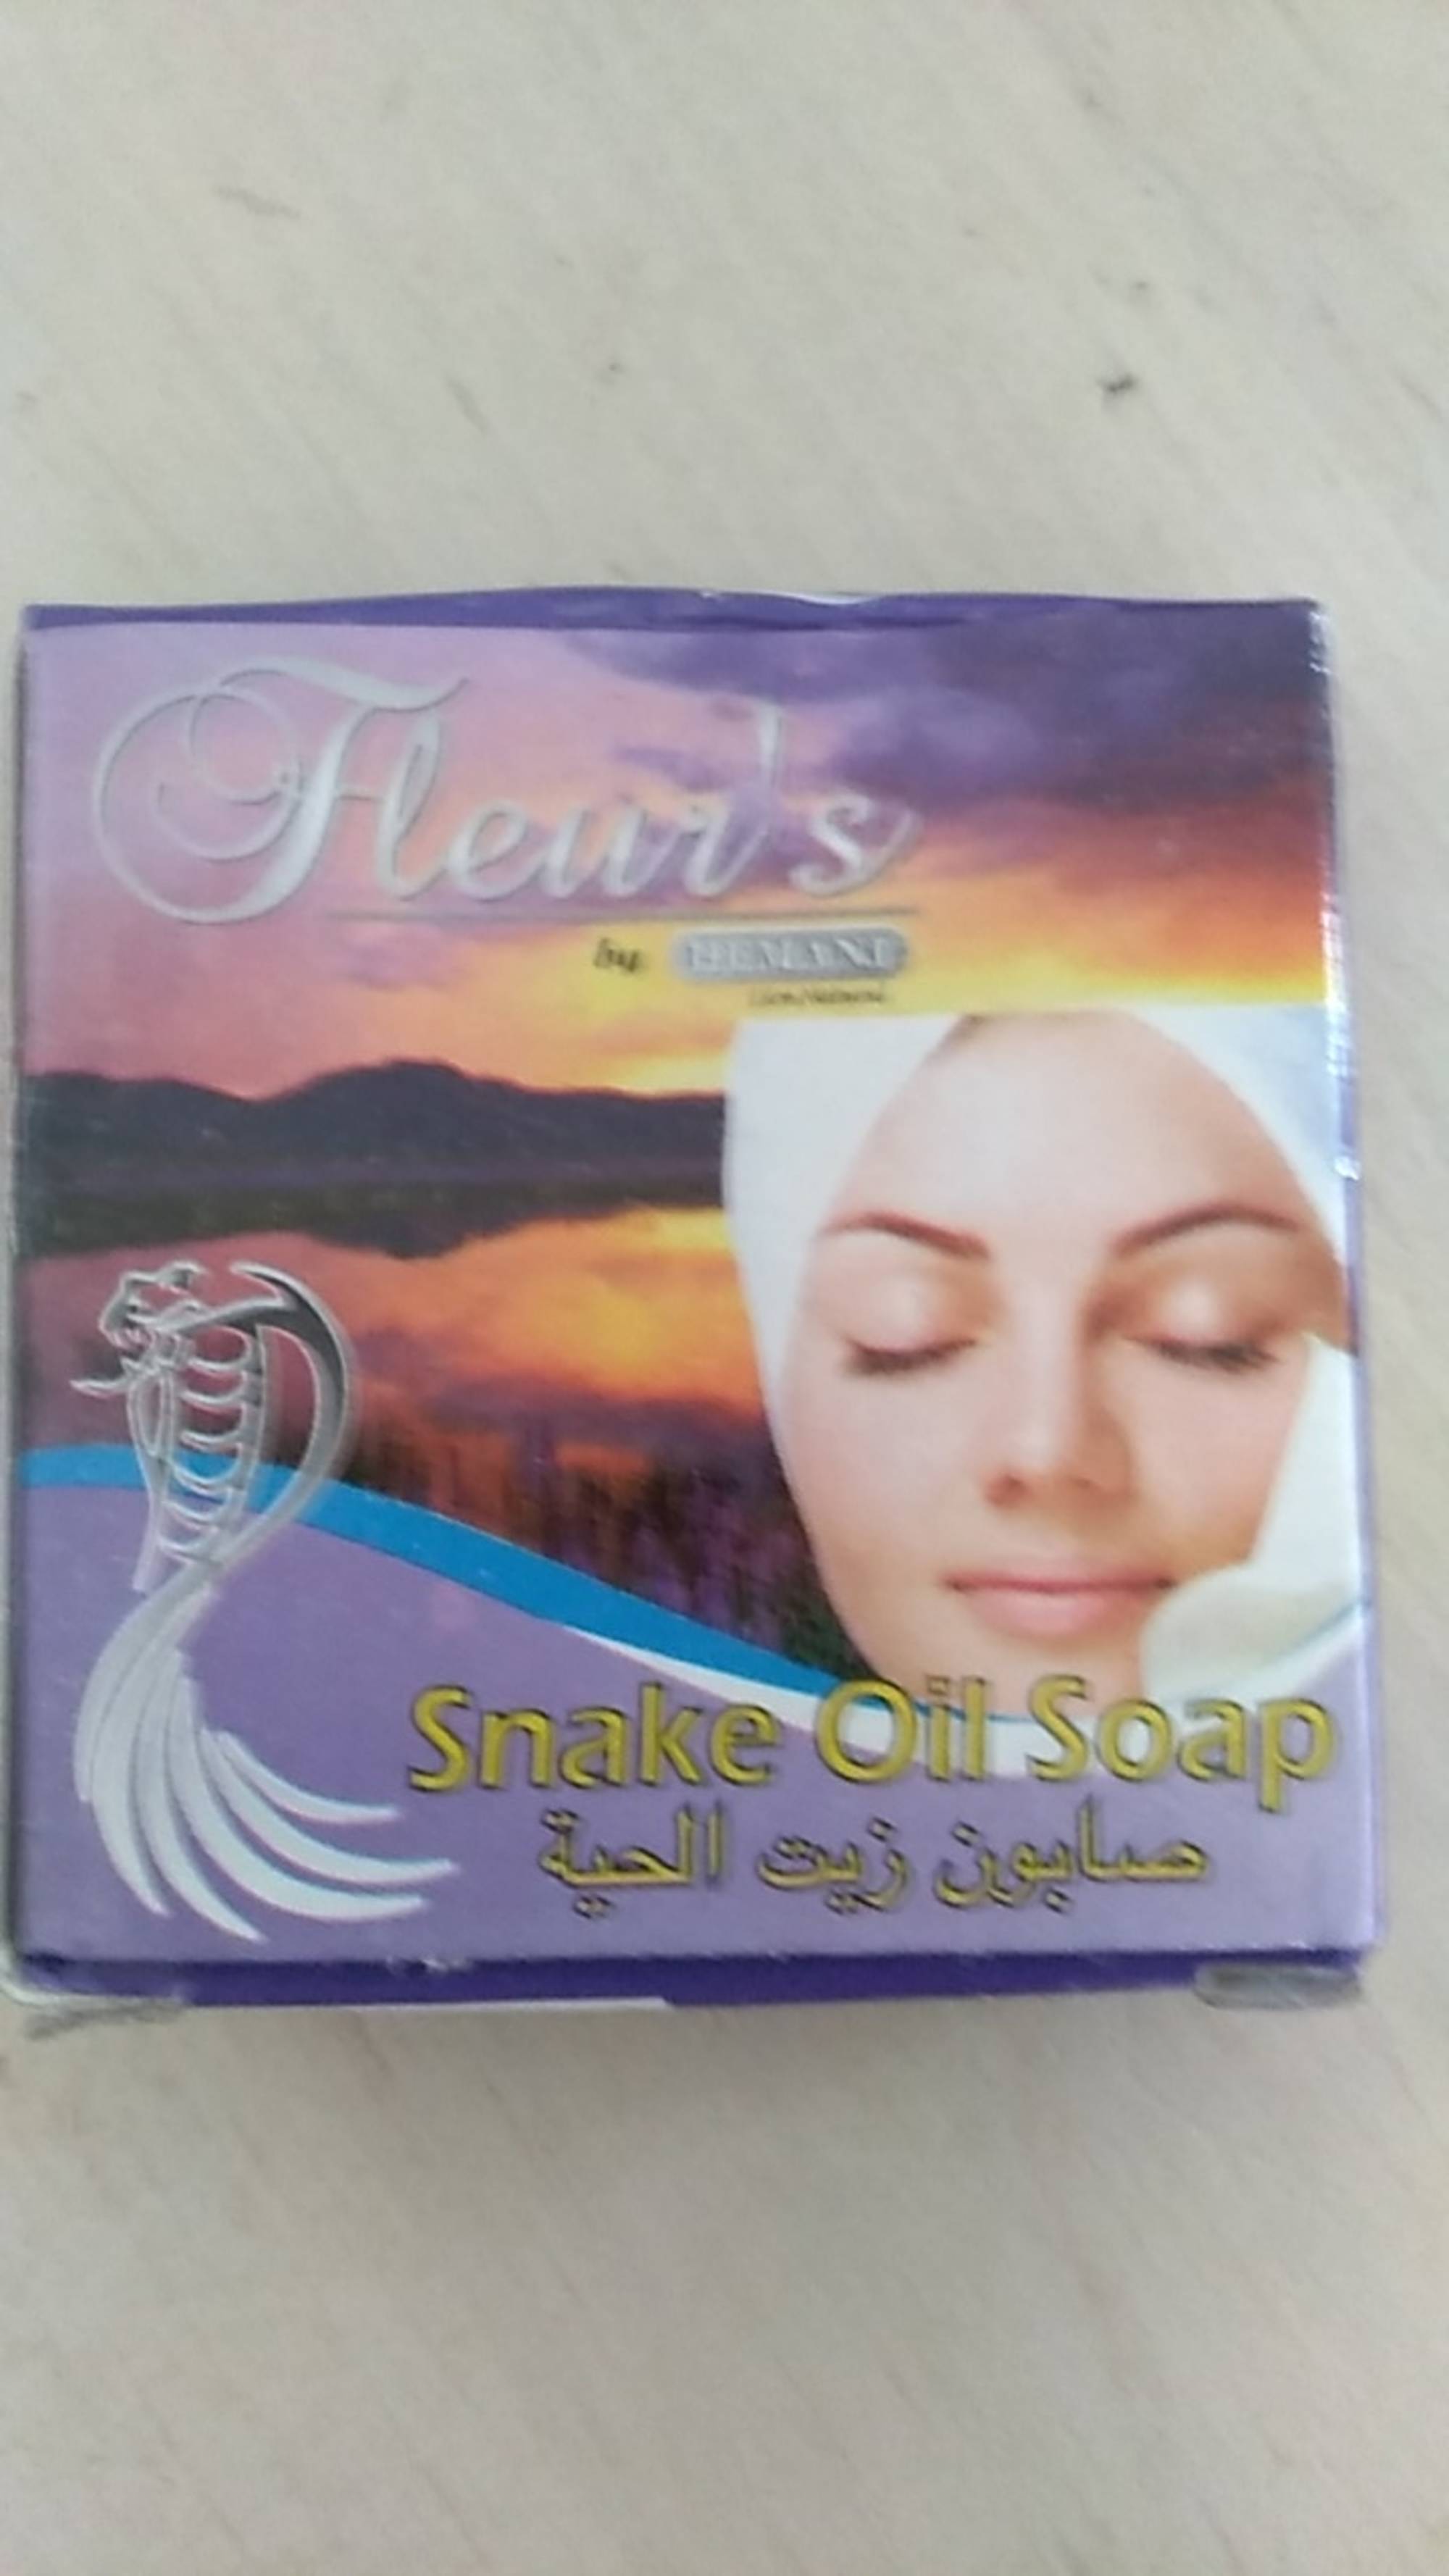 FLEUR'S - Snake oil soap